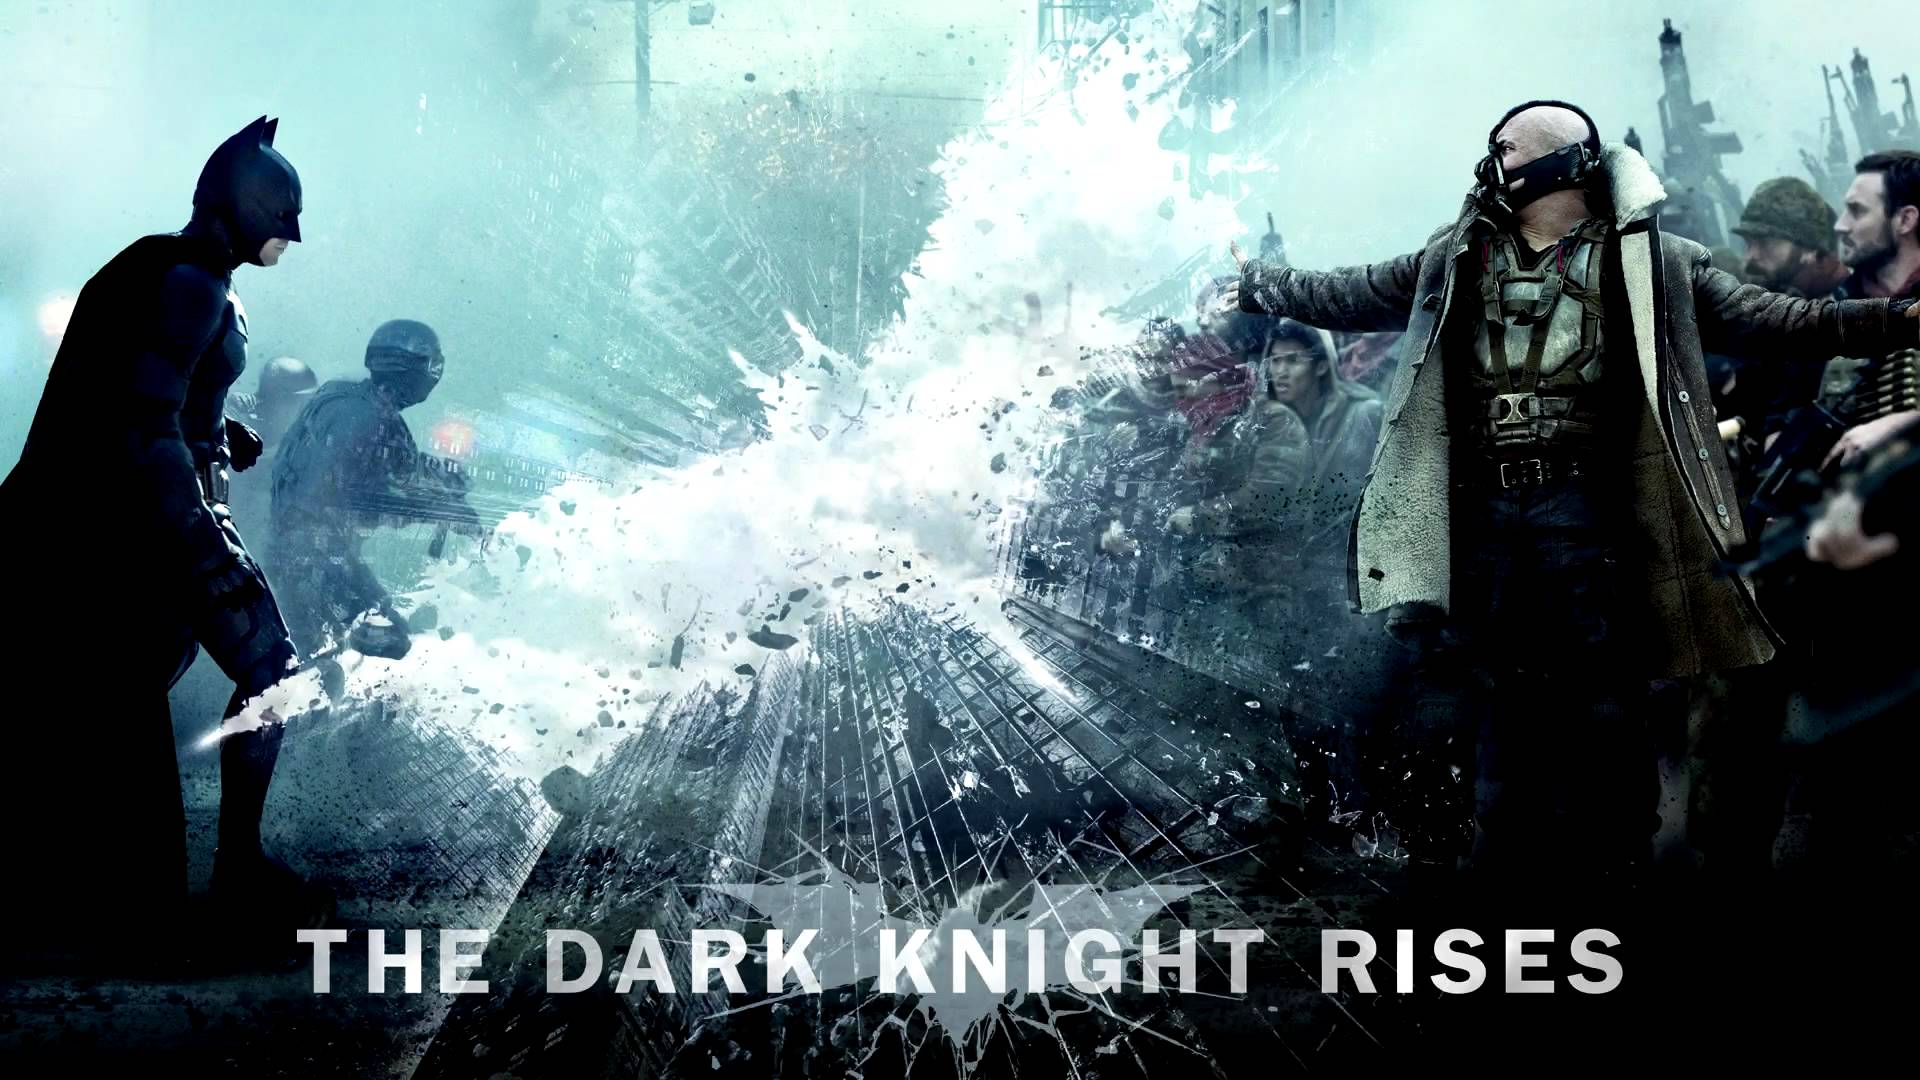 The Dark Knight Rises VS Bane Impression fight 1080p